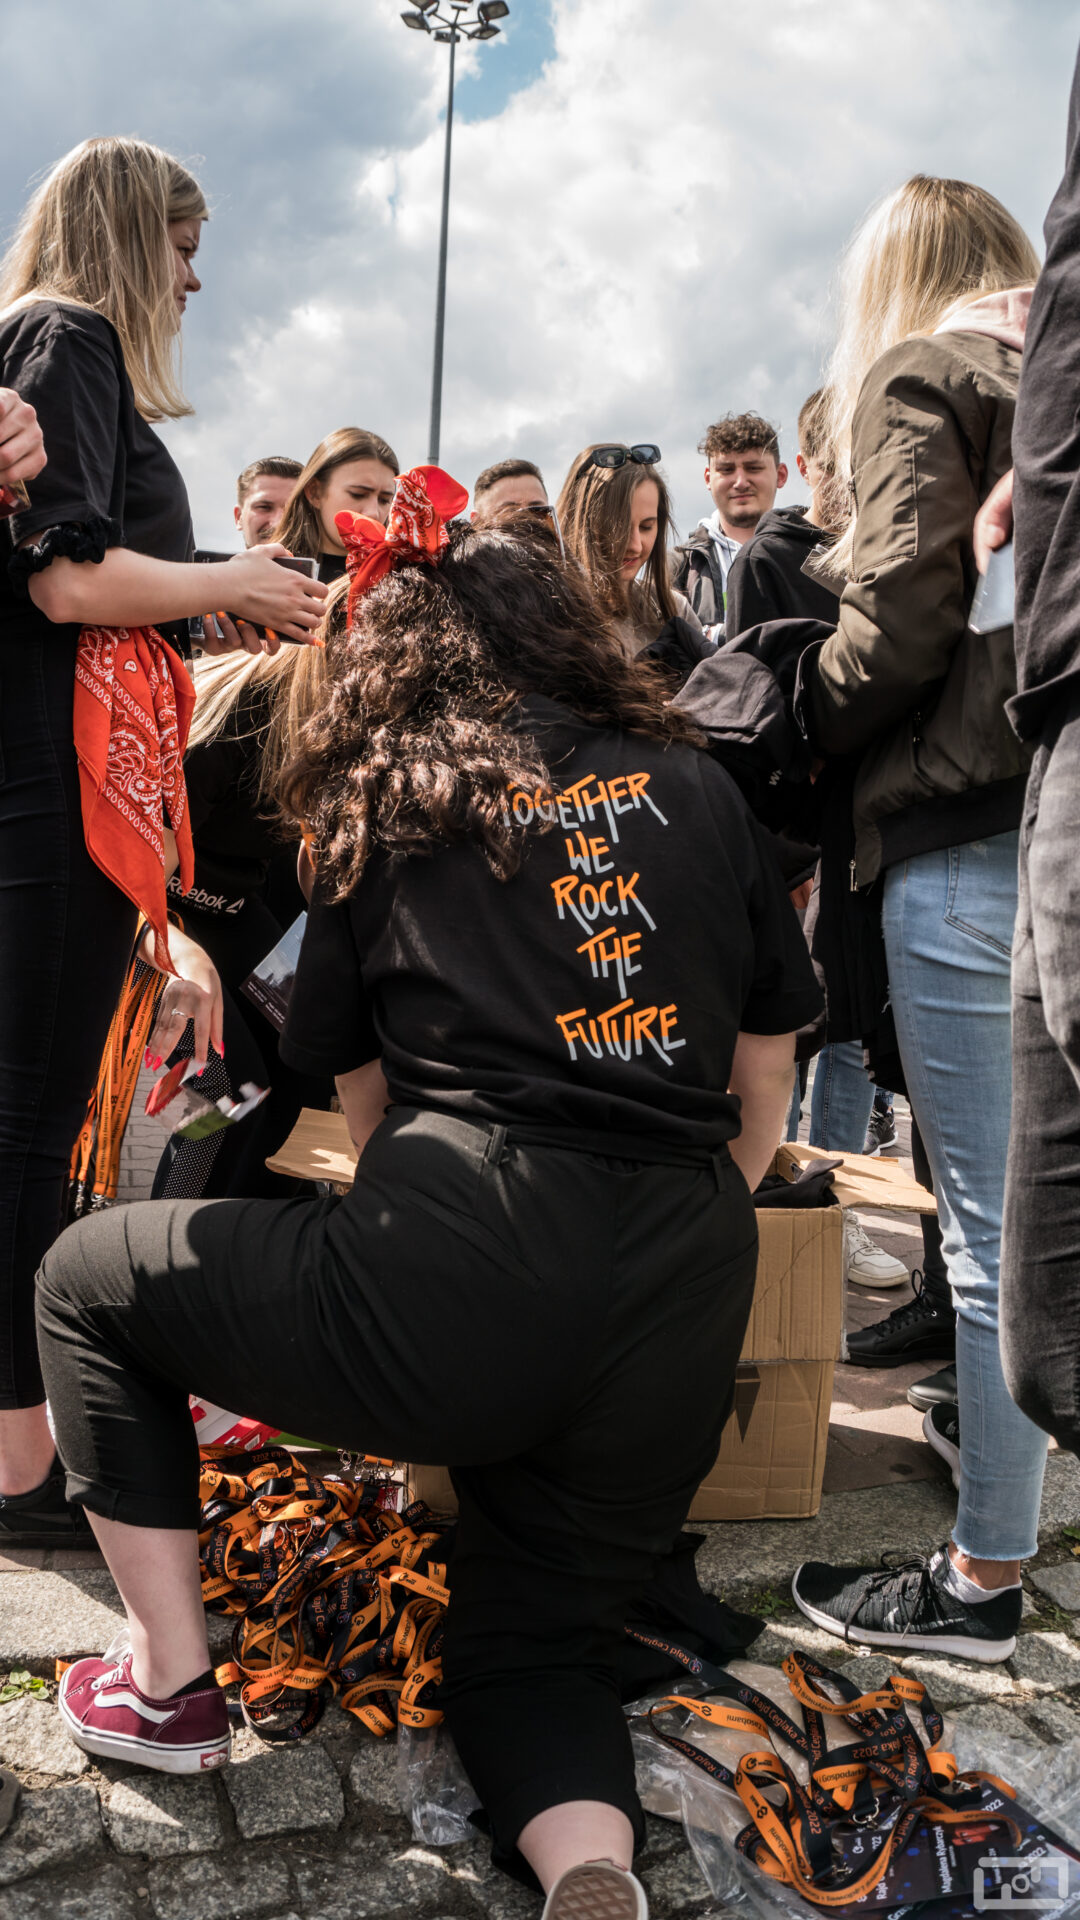 Rozmawiający ze sobą. W centralnej cześci zdjęcia znajduje się studnetka obrócona tyłem, która ubrana jest w czarną bluzę z pomarańczowo szarym napisem: Together we rock the future.